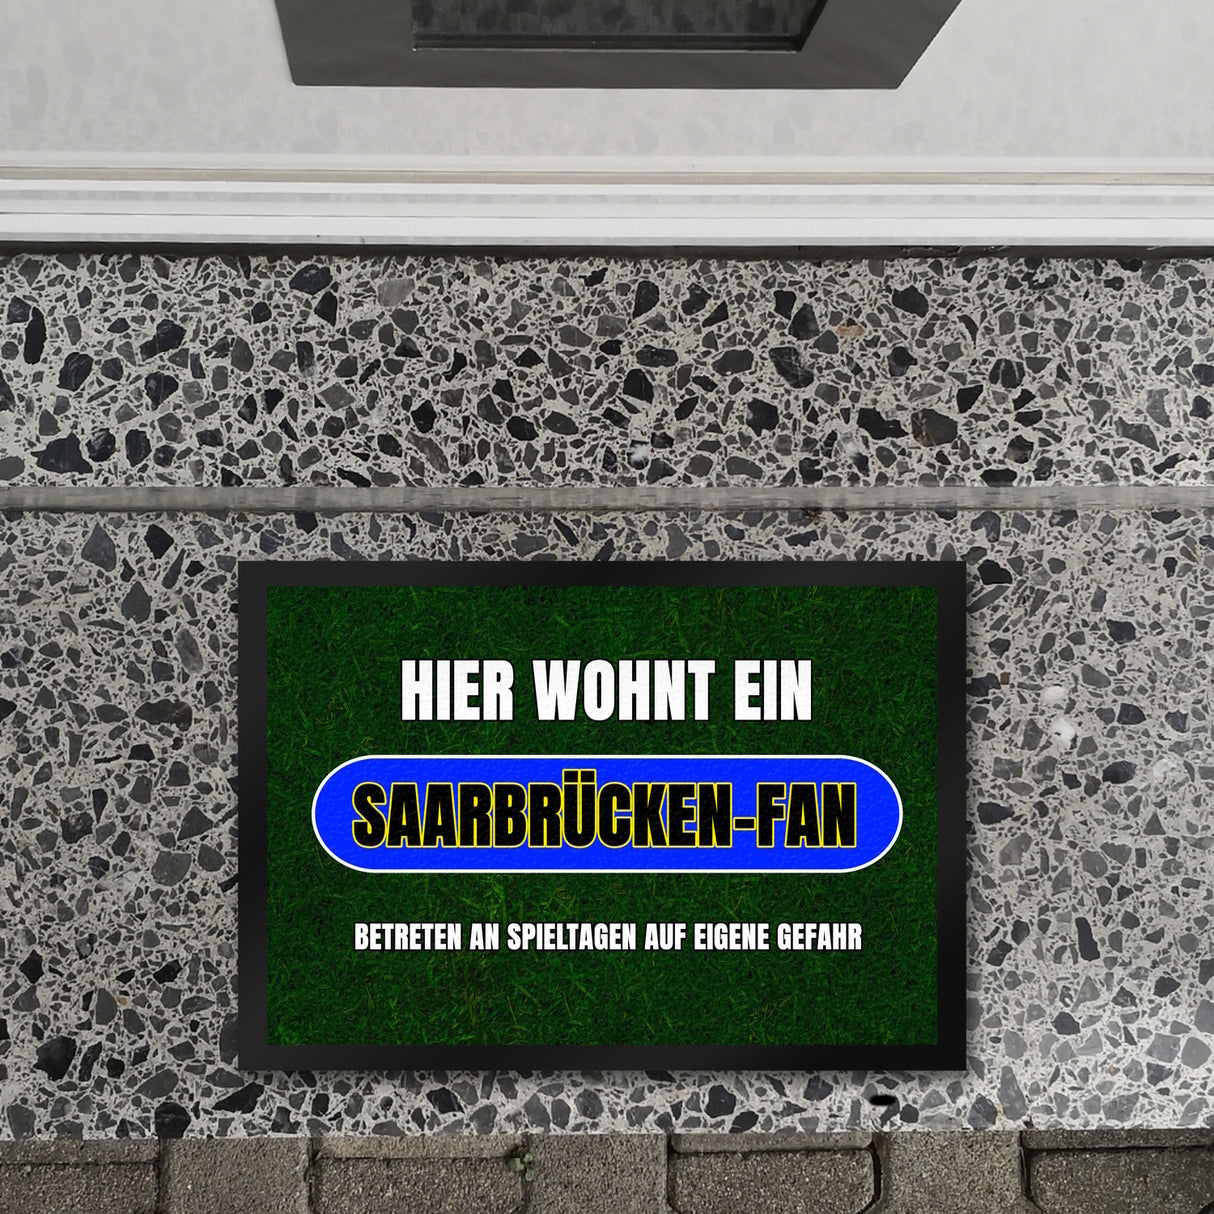 Hier wohnt ein Saarbrücken-Fan Fußmatte in 35x50 cm mit Rasenmotiv